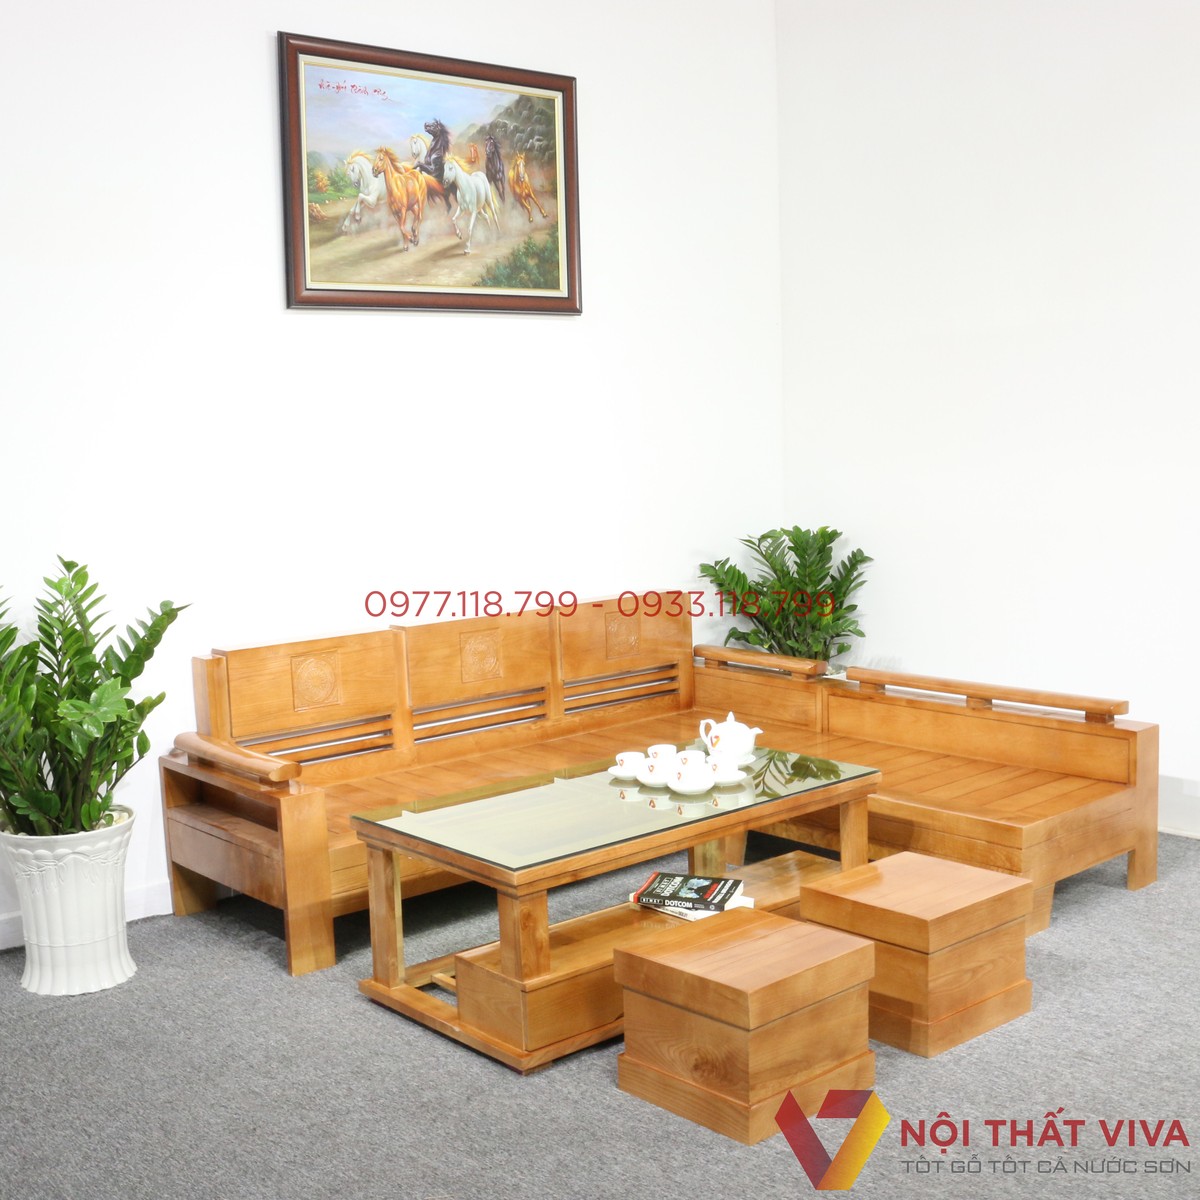 5+ mẫu ghế sofa gỗ đẹp với giá rẻ cho phòng khách mọi gia đình